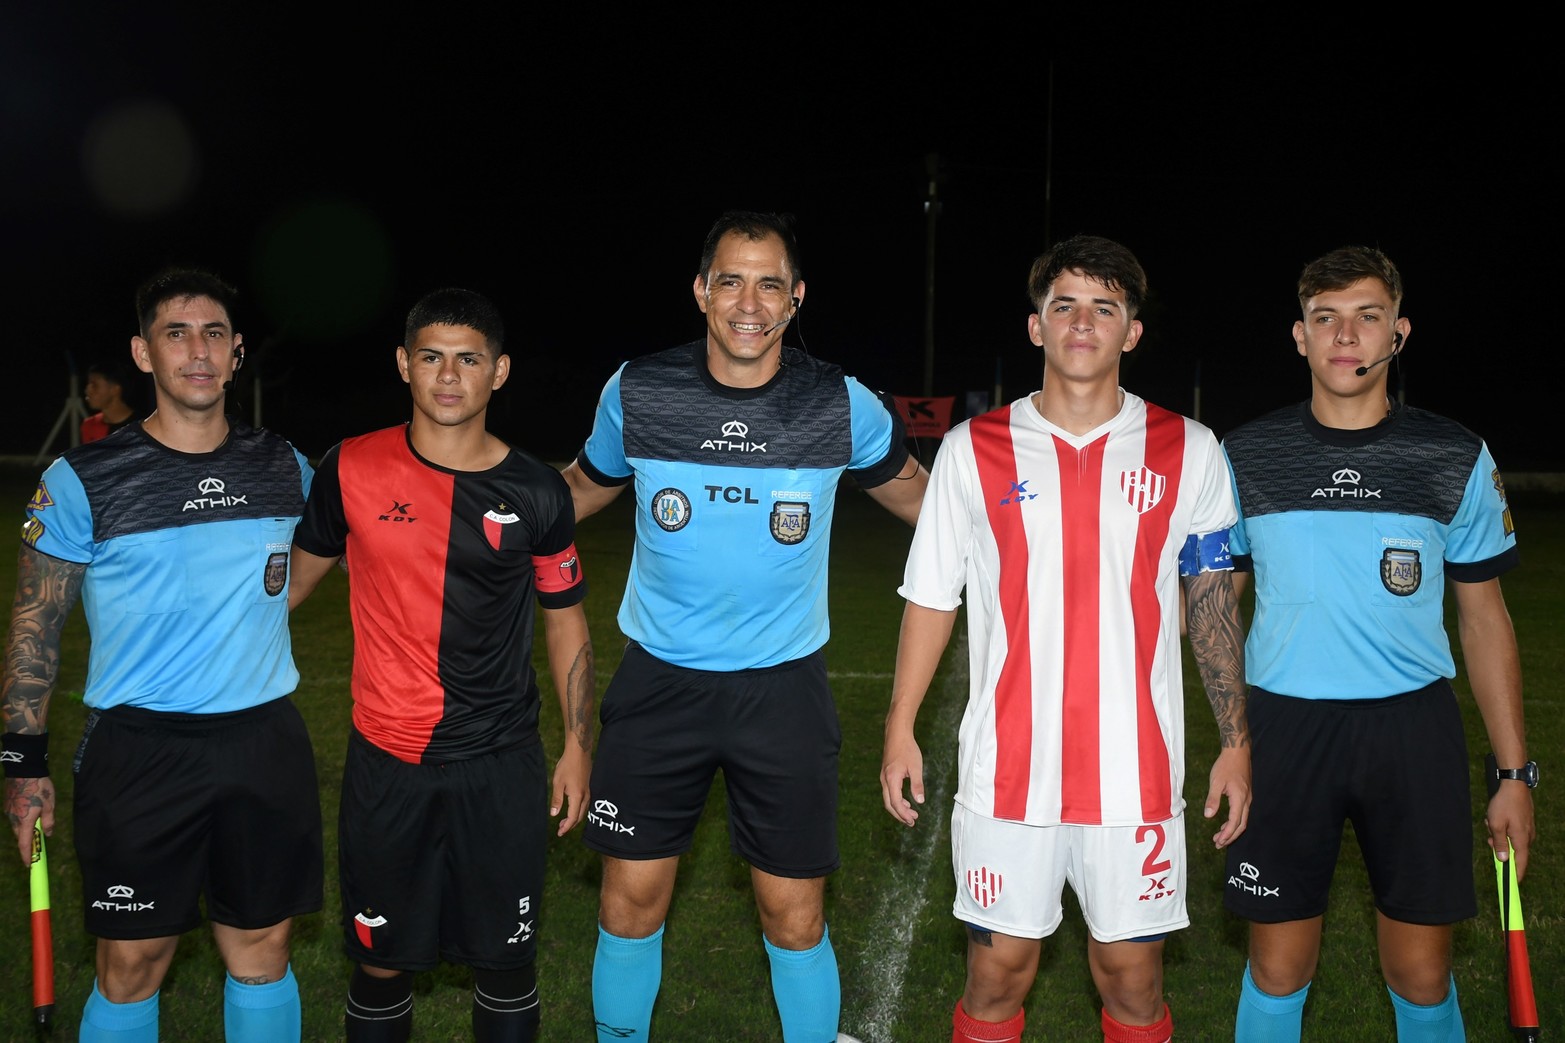 Colón se consagró campeón de la 10 edición del torneo de fútbol "Tiburón Lagunero".  Empató 1 a 1 con Unión. La copa fue de diario El Litoral.